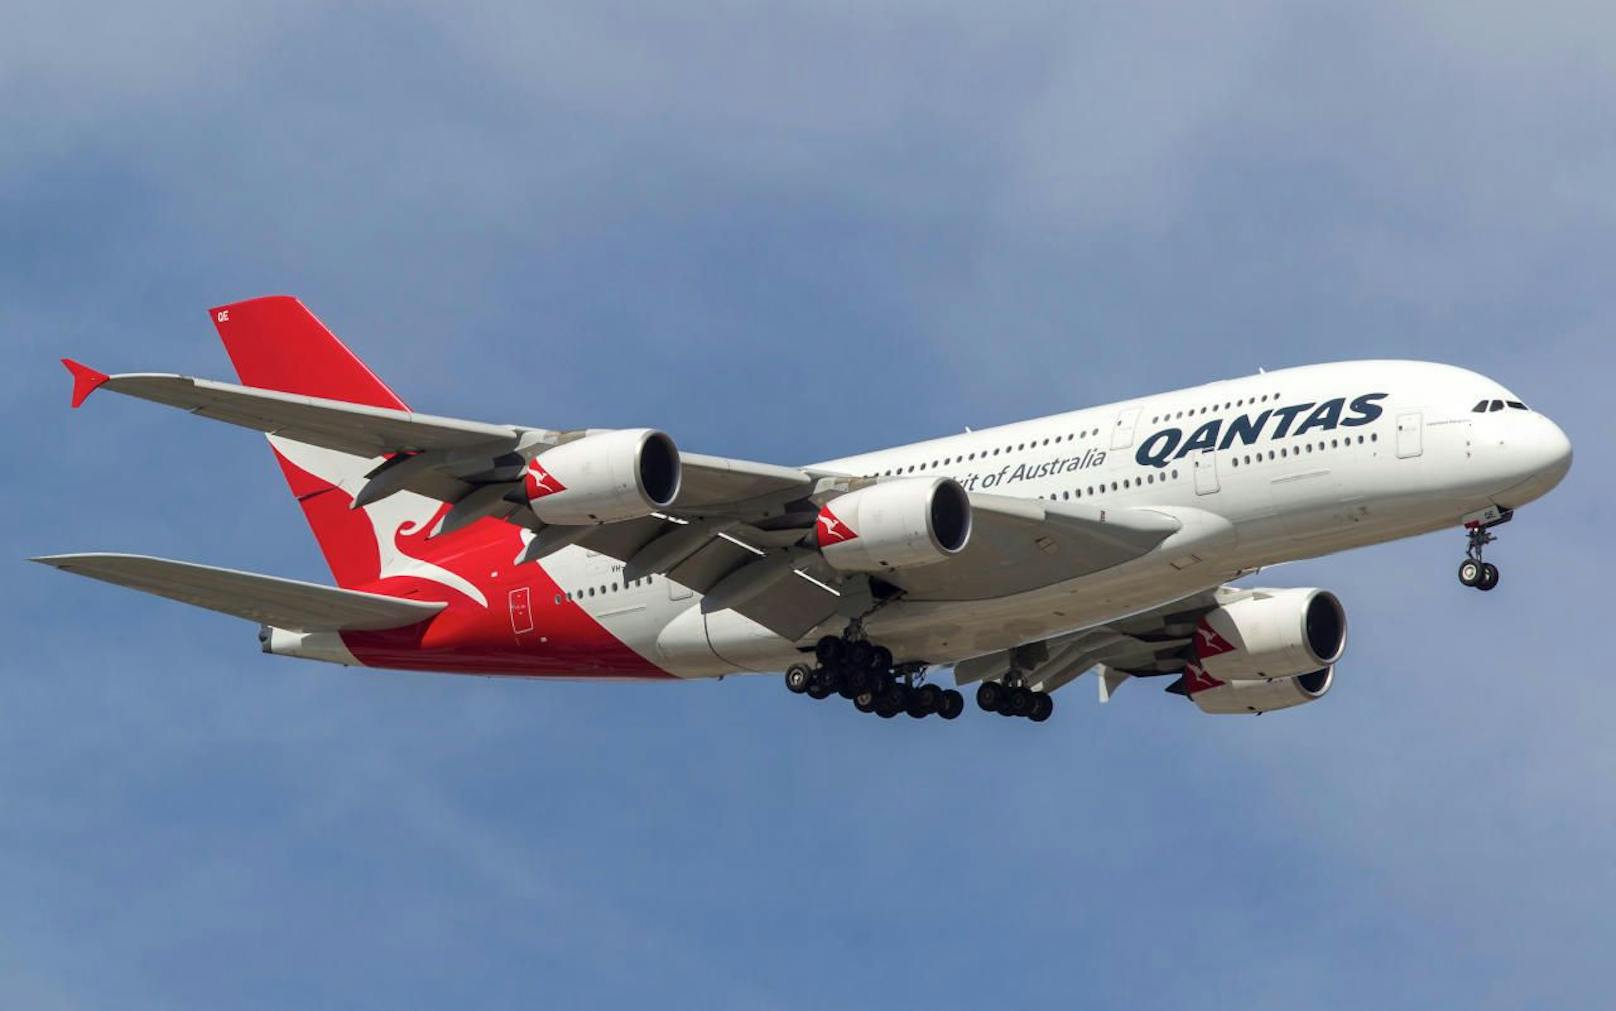 Der Qantas-Flug musste nach dem Zwischenfall gecancelt werden.